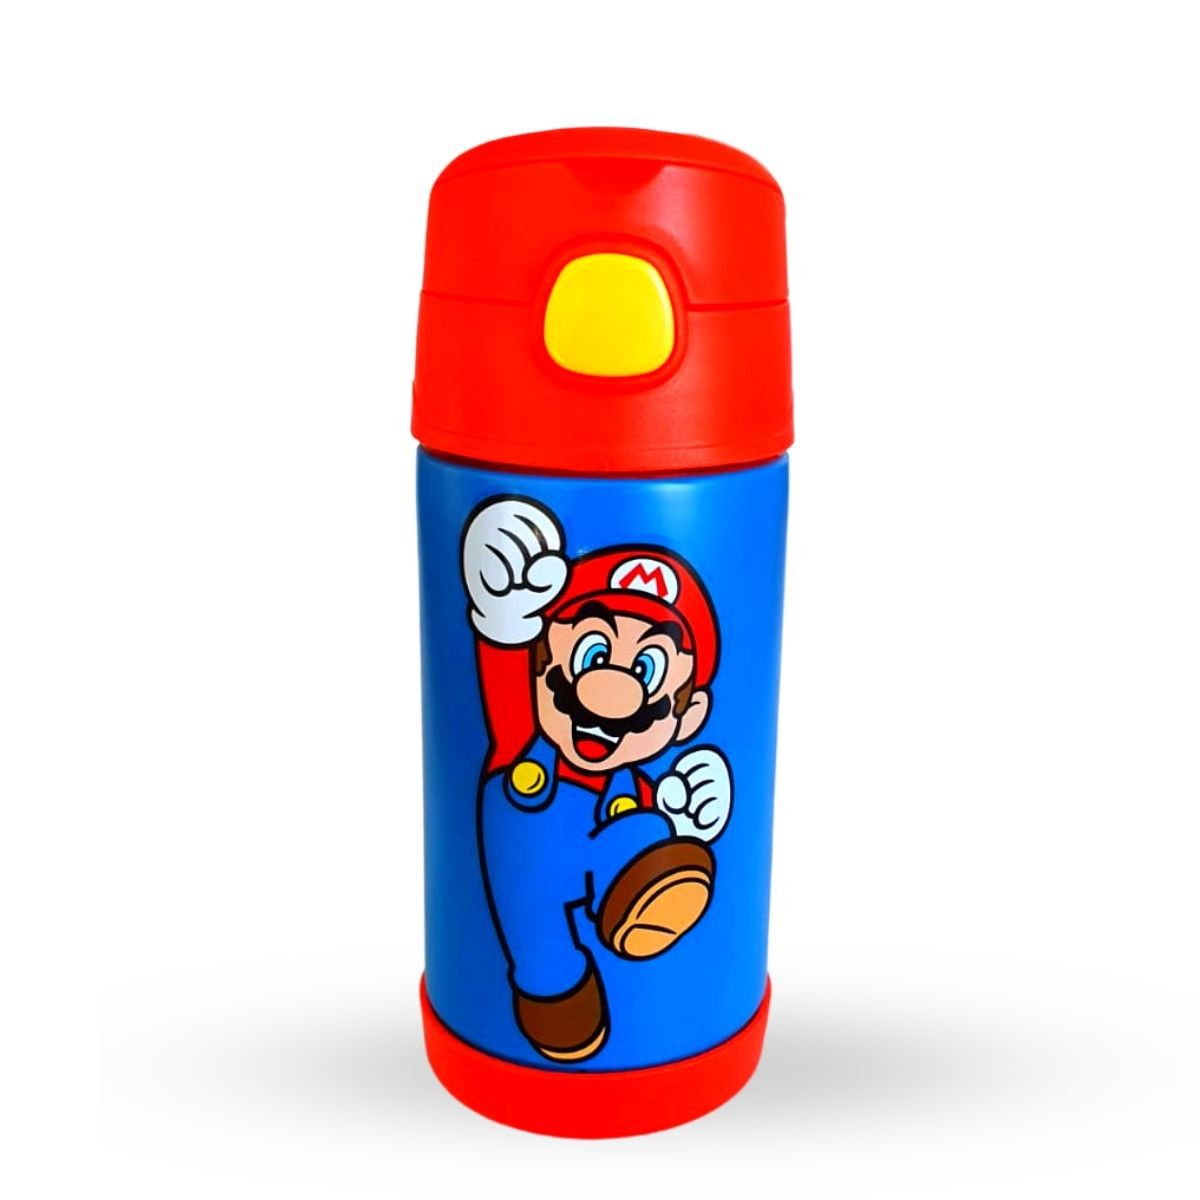 Garrafa Cantil Click Com Canudo Super Mario Bros Nintendo 300ML